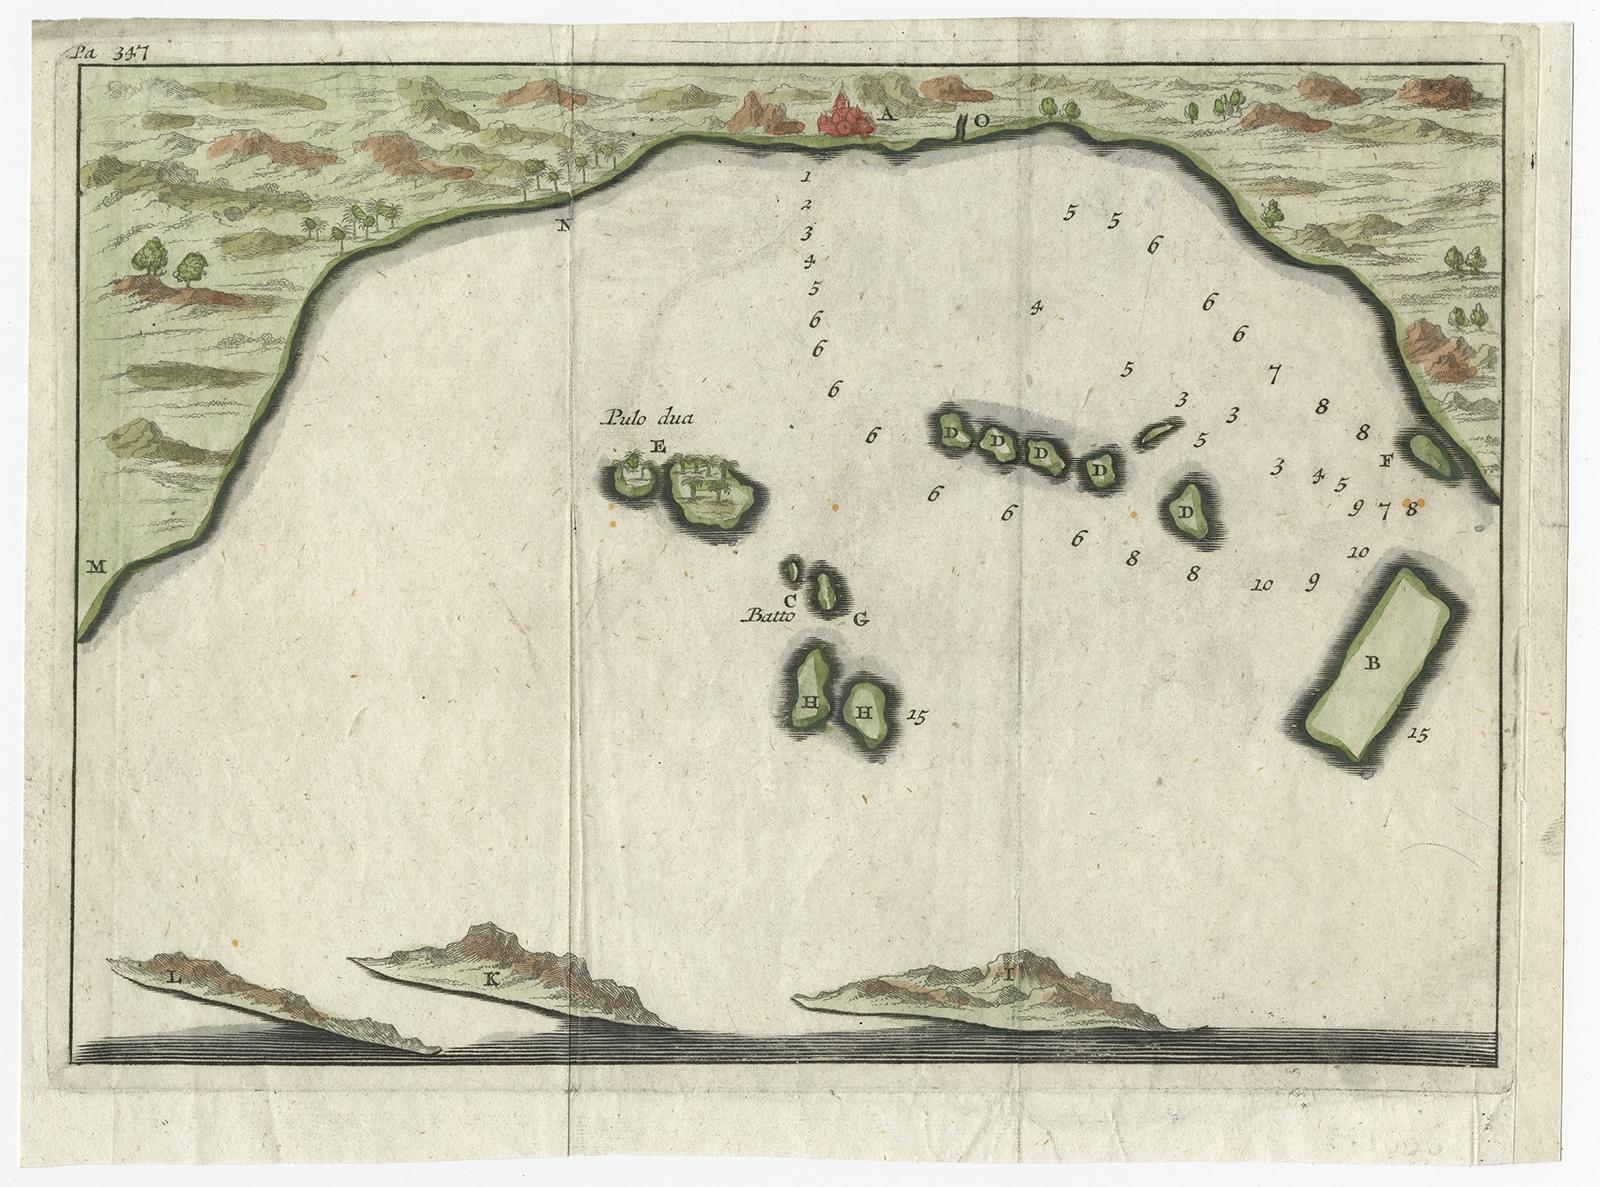 Petite carte du début du XVIIIe siècle de la baie de Banten montrant les îles de Pulo Dua et Pulo Batto ainsi que des sondages dans la baie et des profils de collines sur les îles, publiée par Constantin de Renneville (vers 1650-1723) dans son